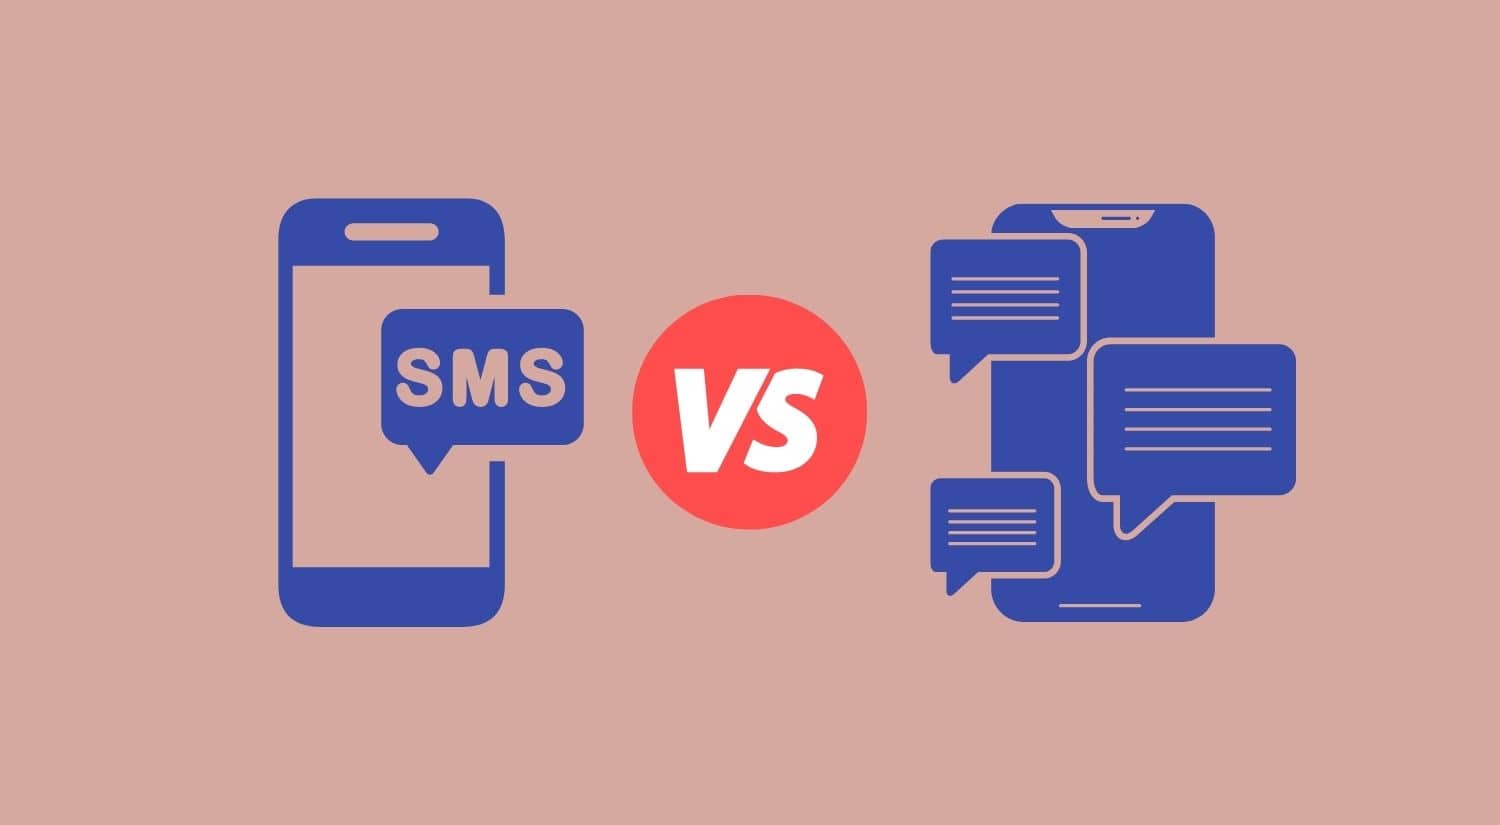 SMS vs Instant messaging OTT apps